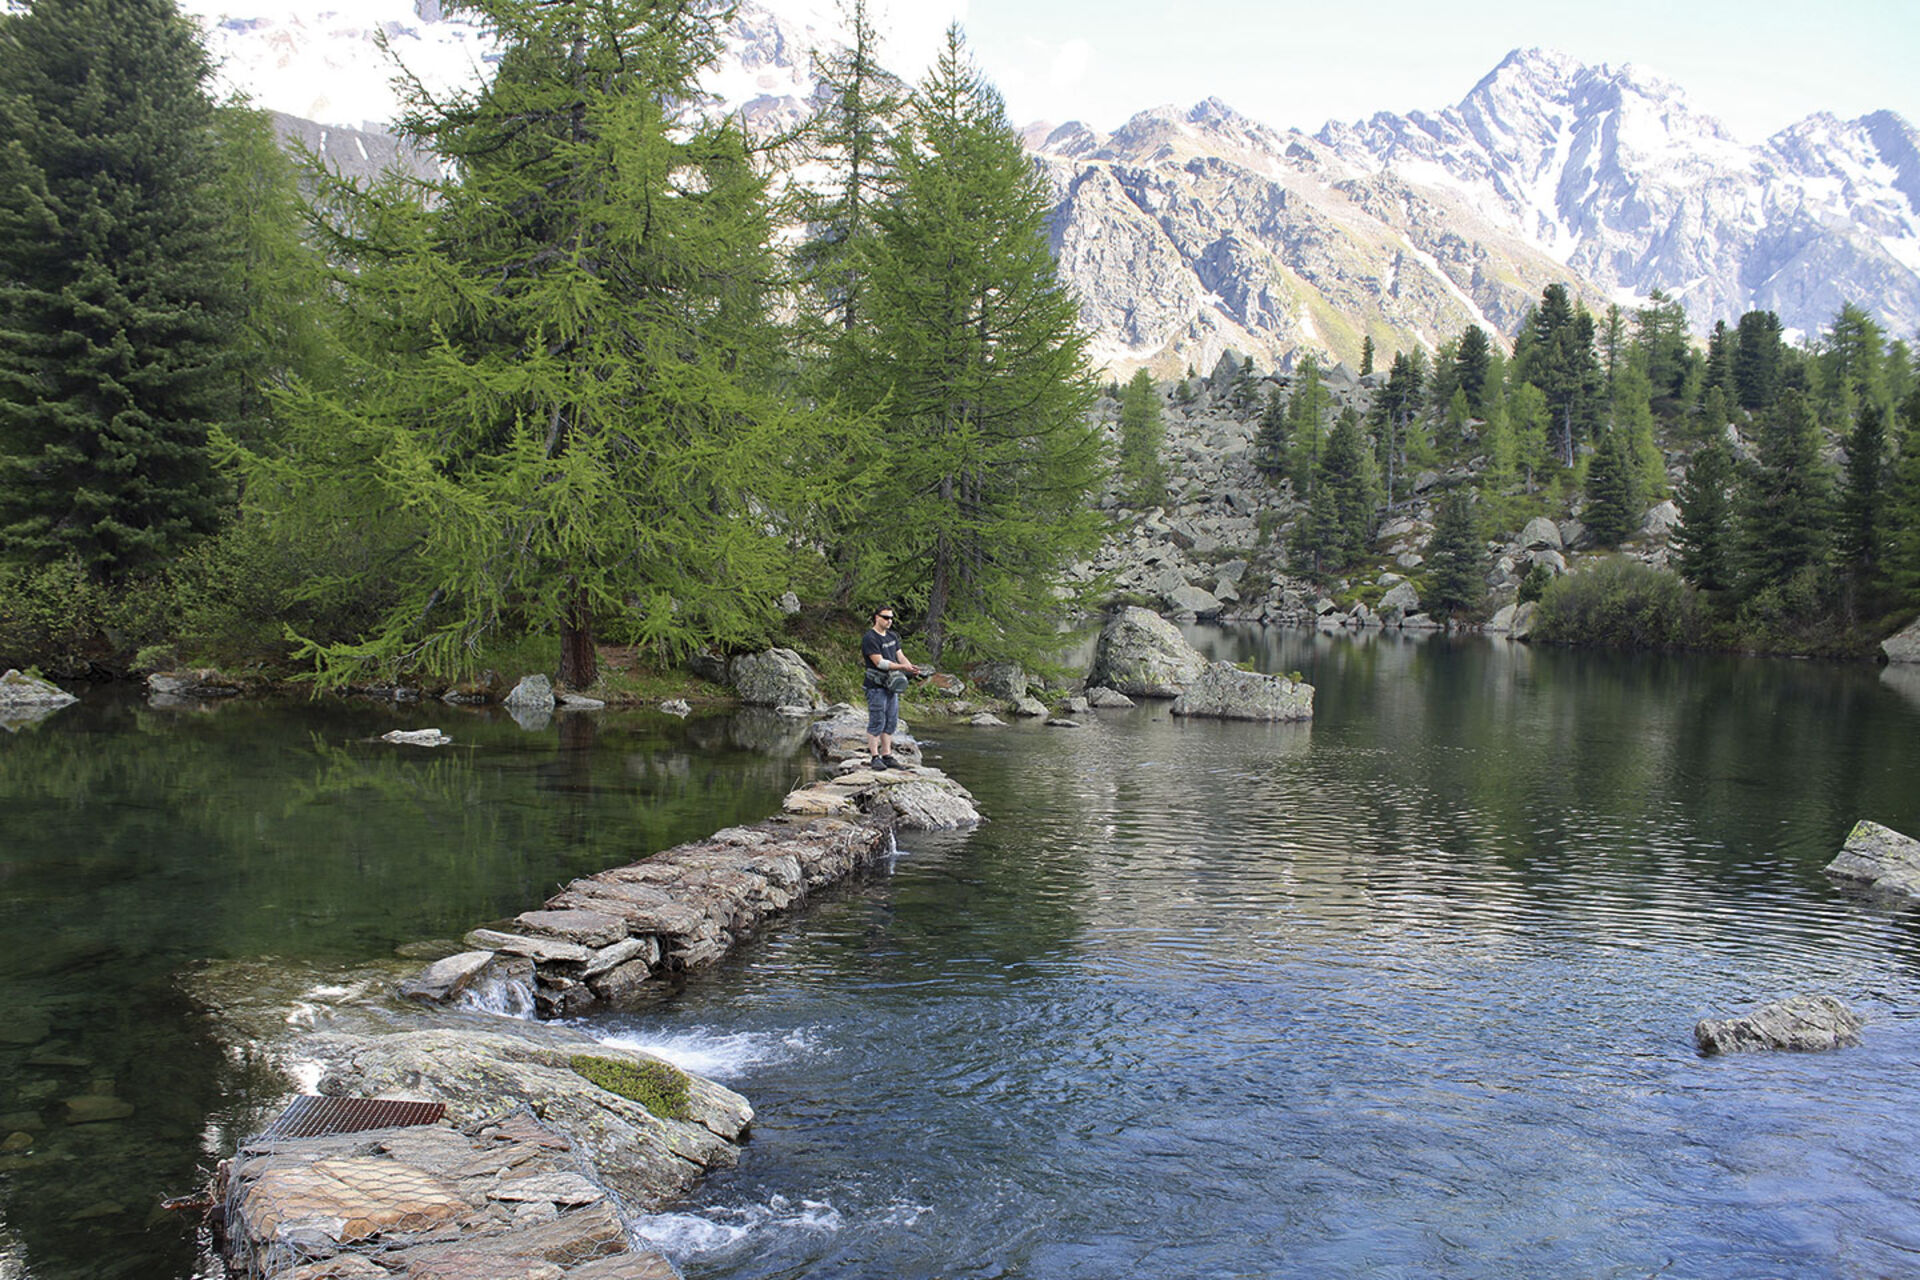  Malerische Umgebung, während im glasklaren Wasser die Fische beobachtet und gezielt angeworfen werden können: Lago di Saoseo.  